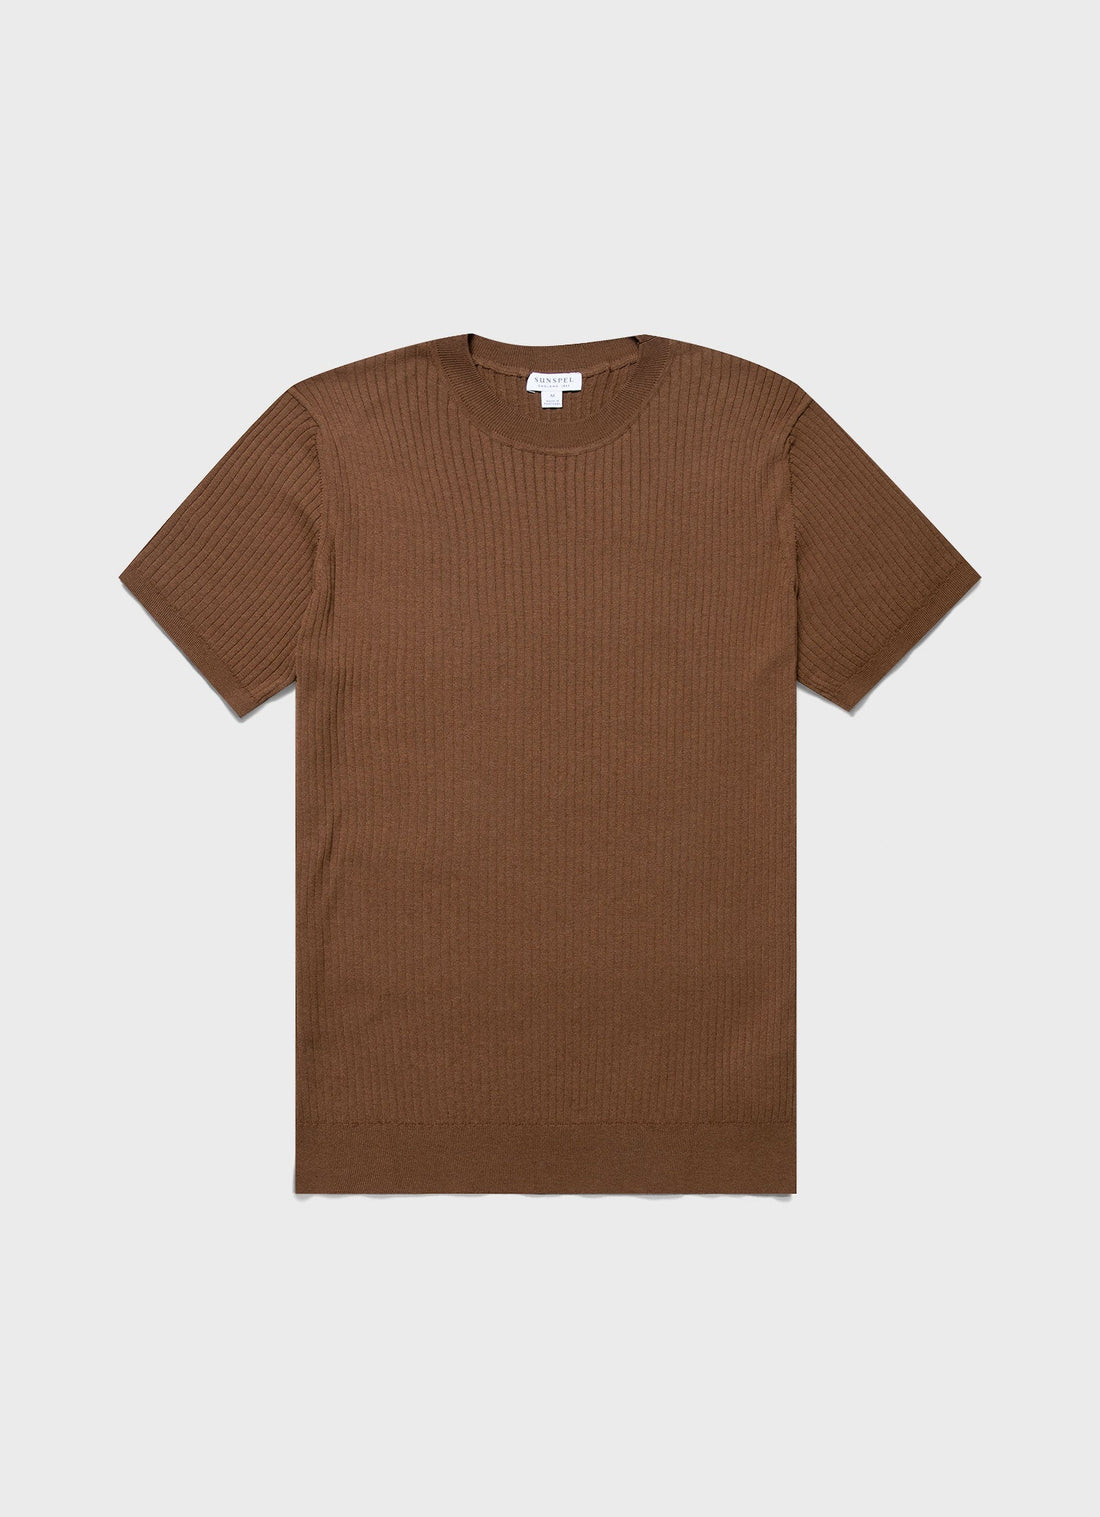 Men's Fine Rib Silk Cotton T-shirt in Dark Sand